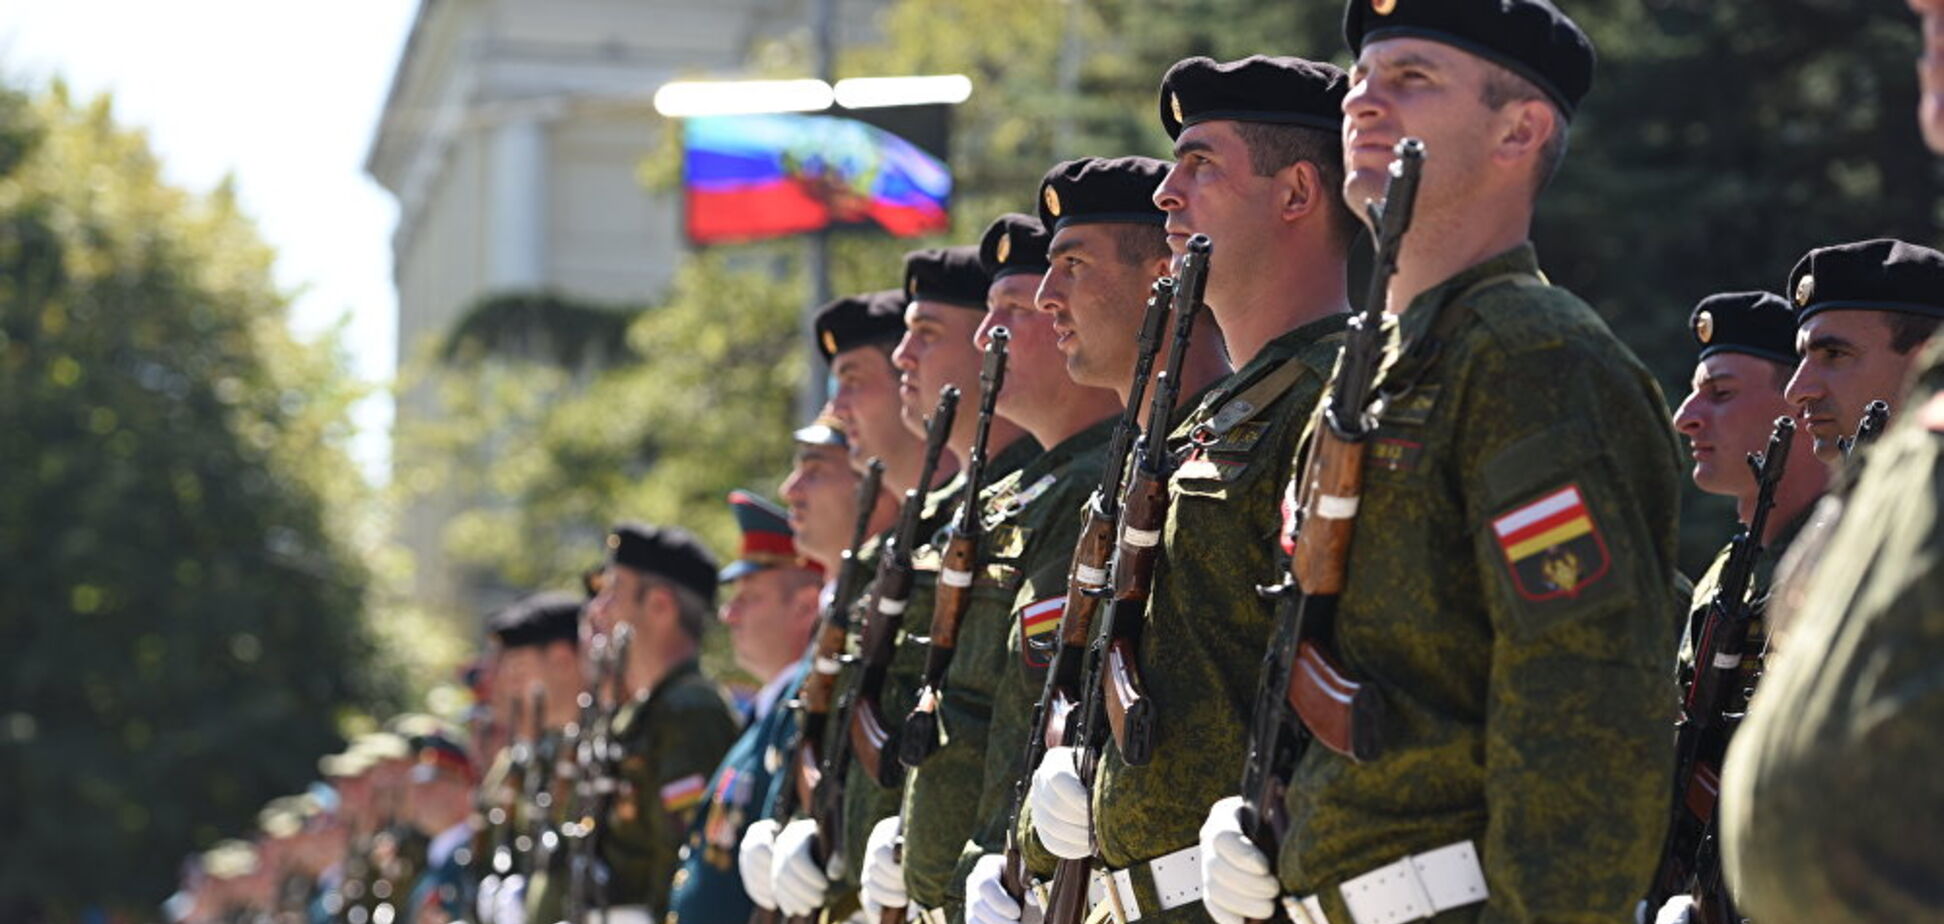 Поповнення для армії Путіна: генерал пояснив, навіщо йому південноосетинці